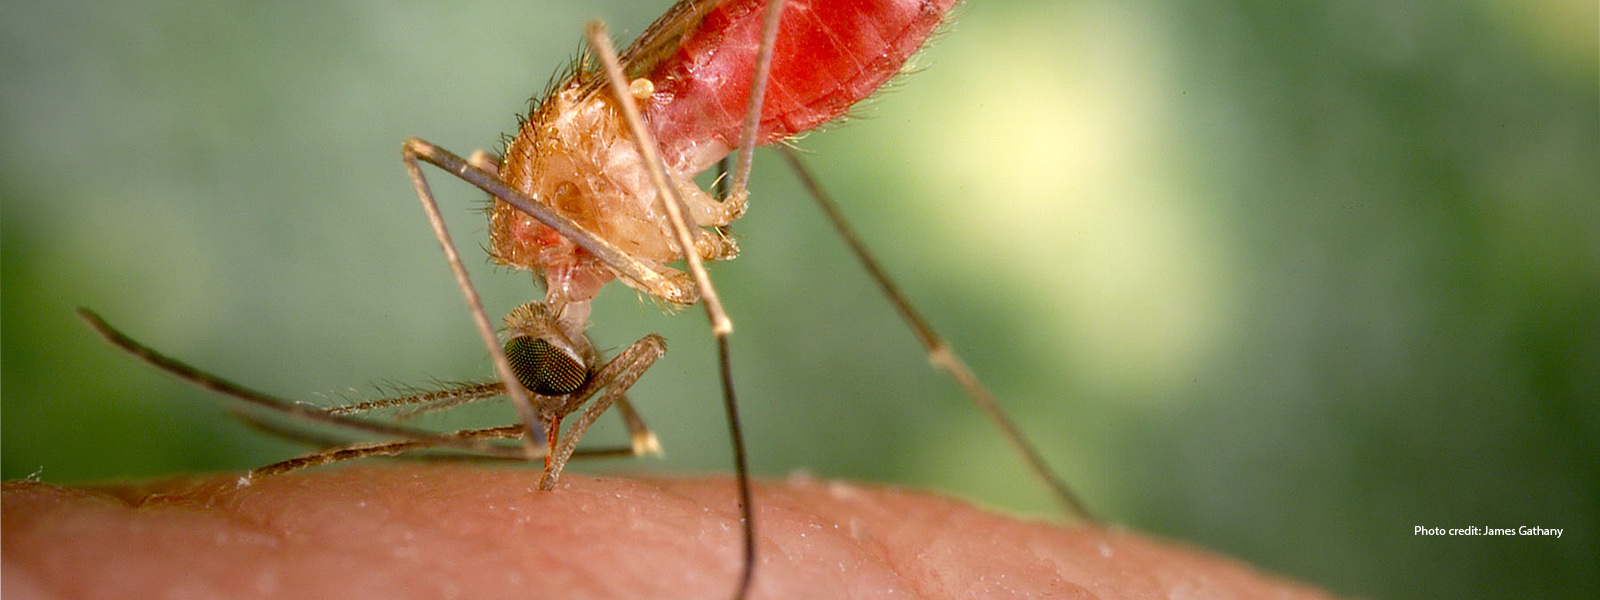 A mosquito biting skin